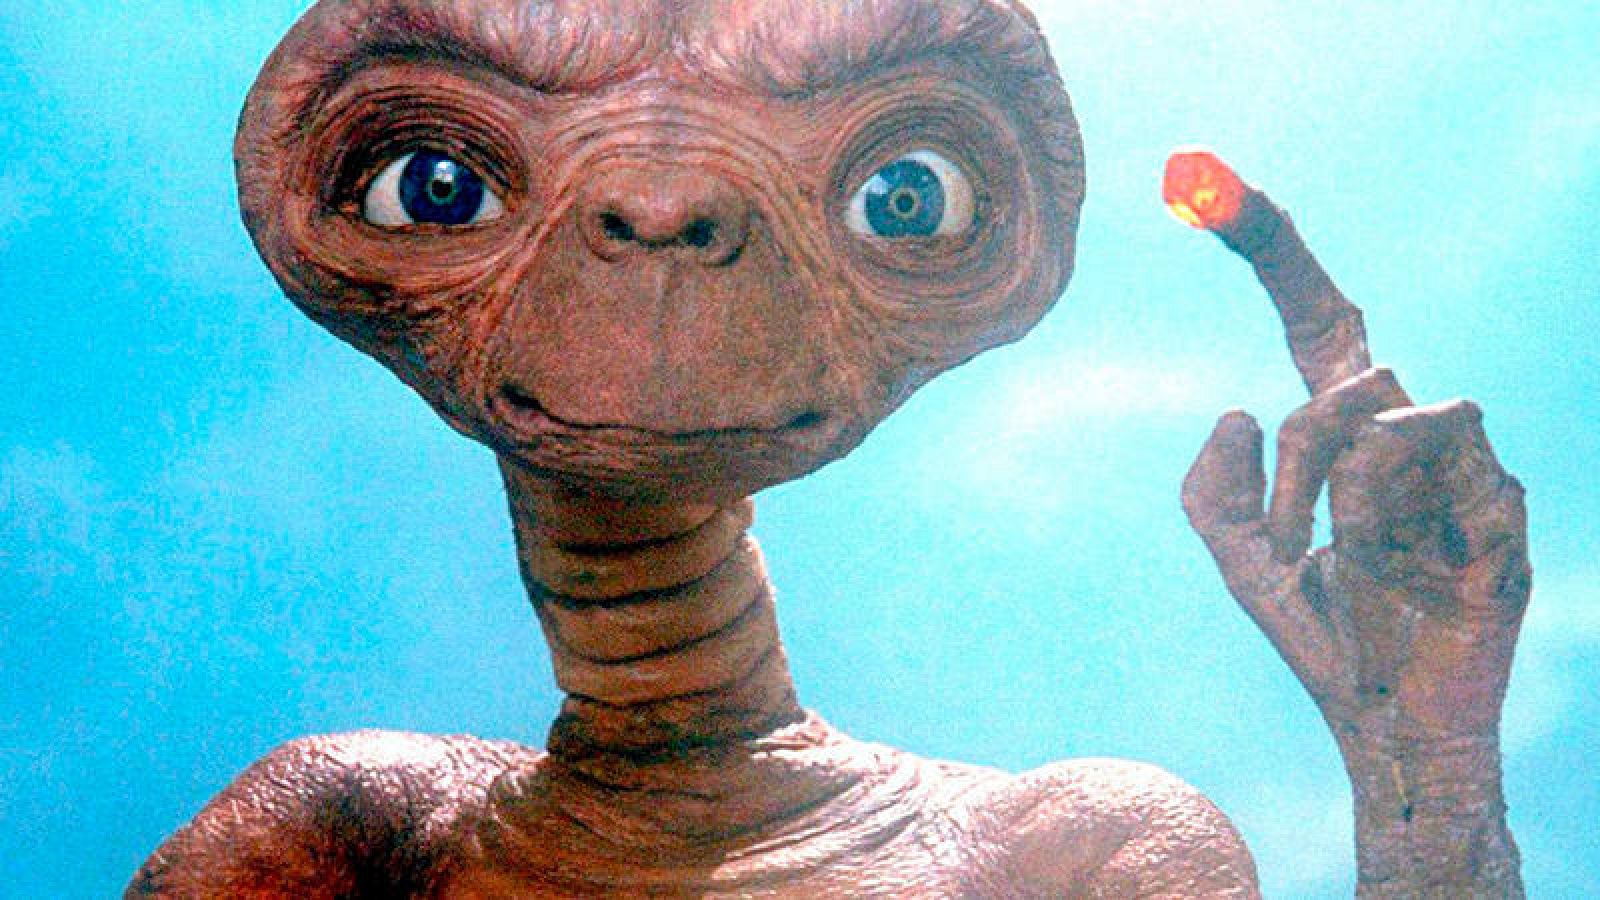 Un reúne a los extraterrestres famosos del cine - RTVE.es